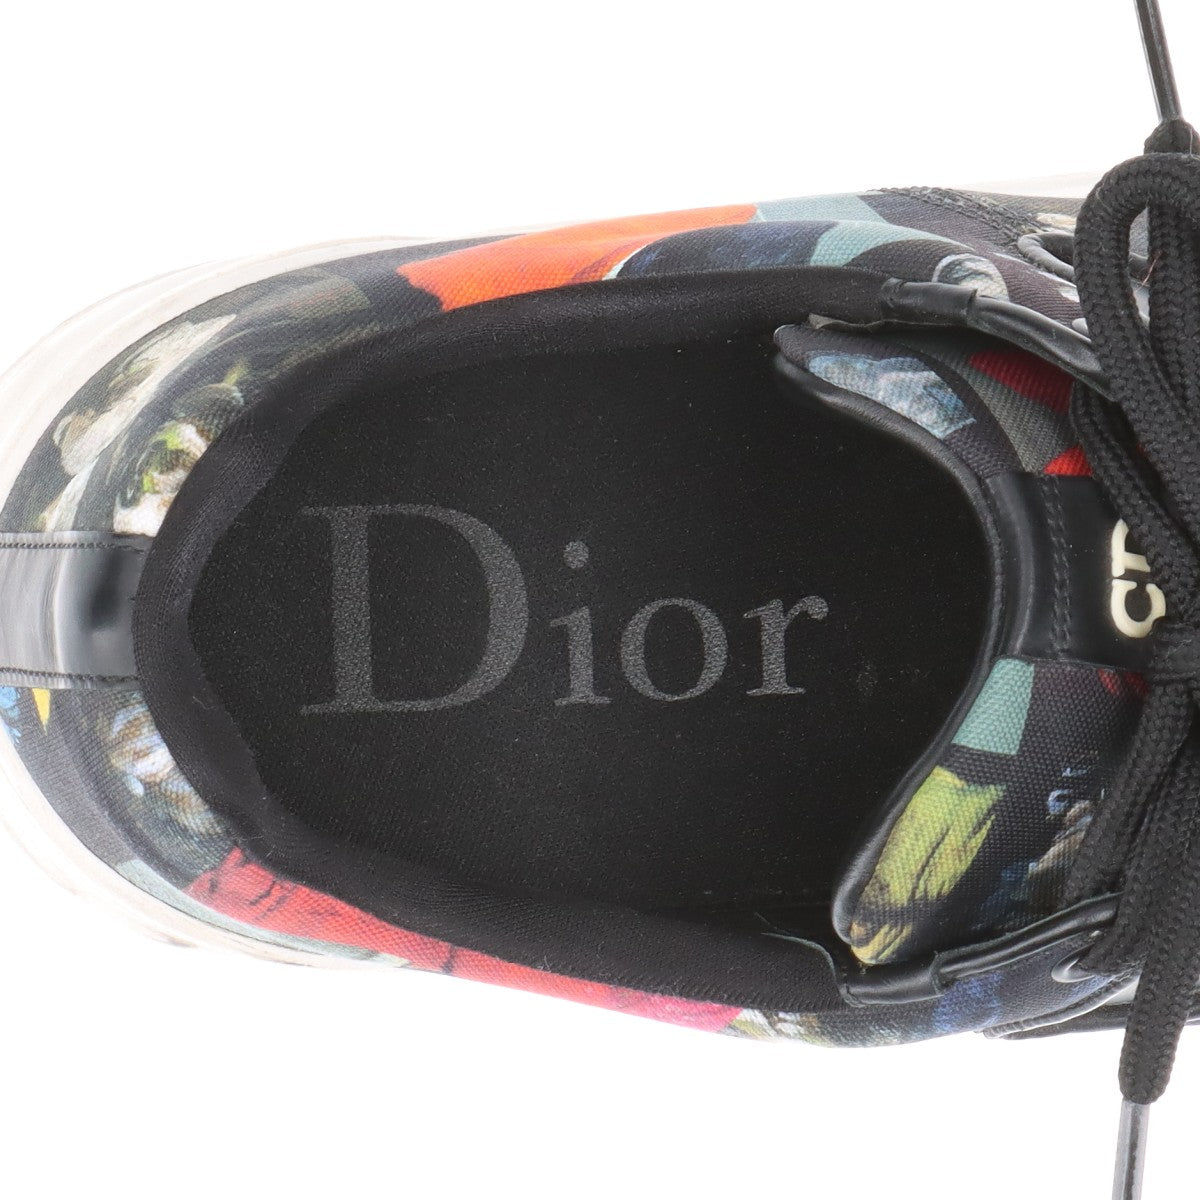 ディオールオム B17 キャンバス スニーカー 41 メンズ マルチカラー 18ELI プリント アナログデジタル